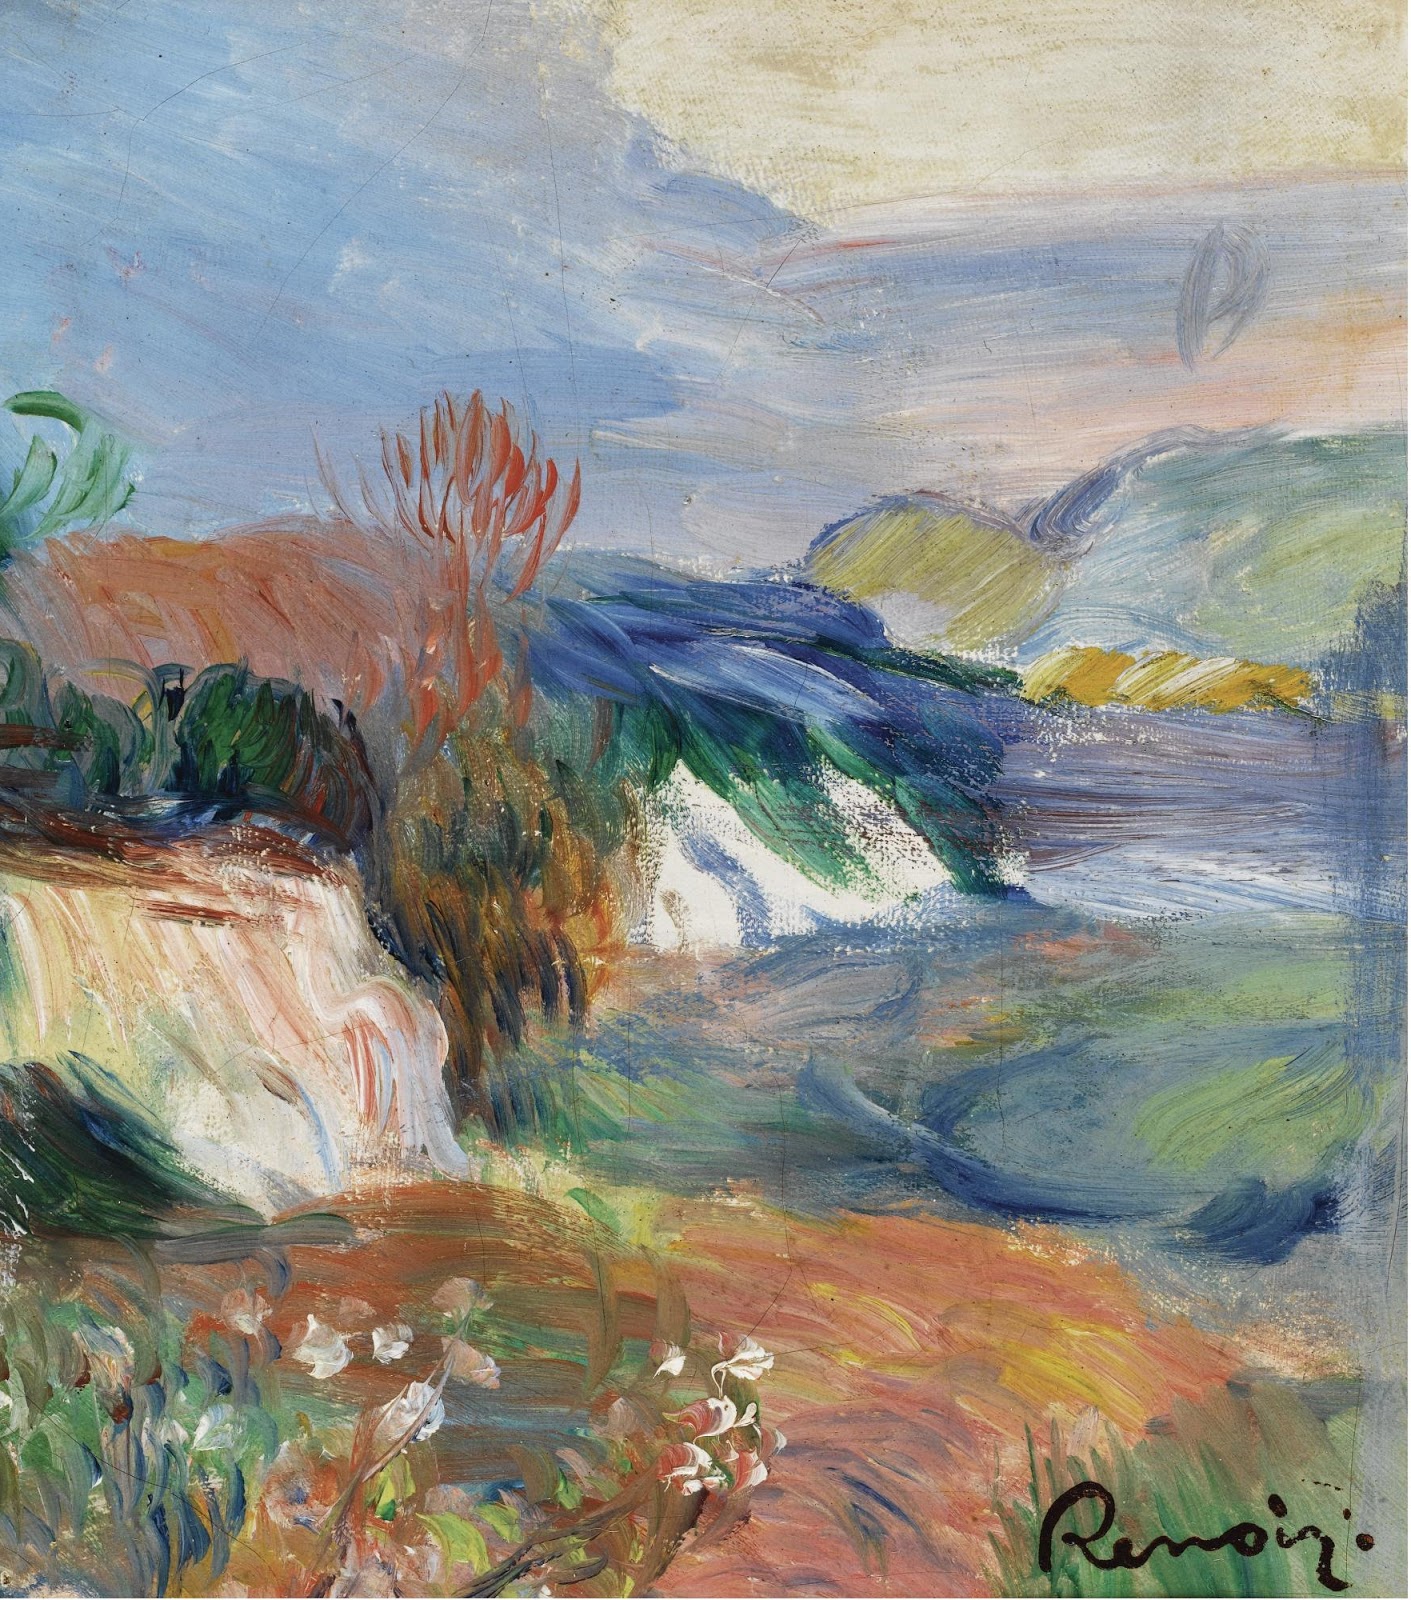 Pierre+Auguste+Renoir-1841-1-19 (456).jpg